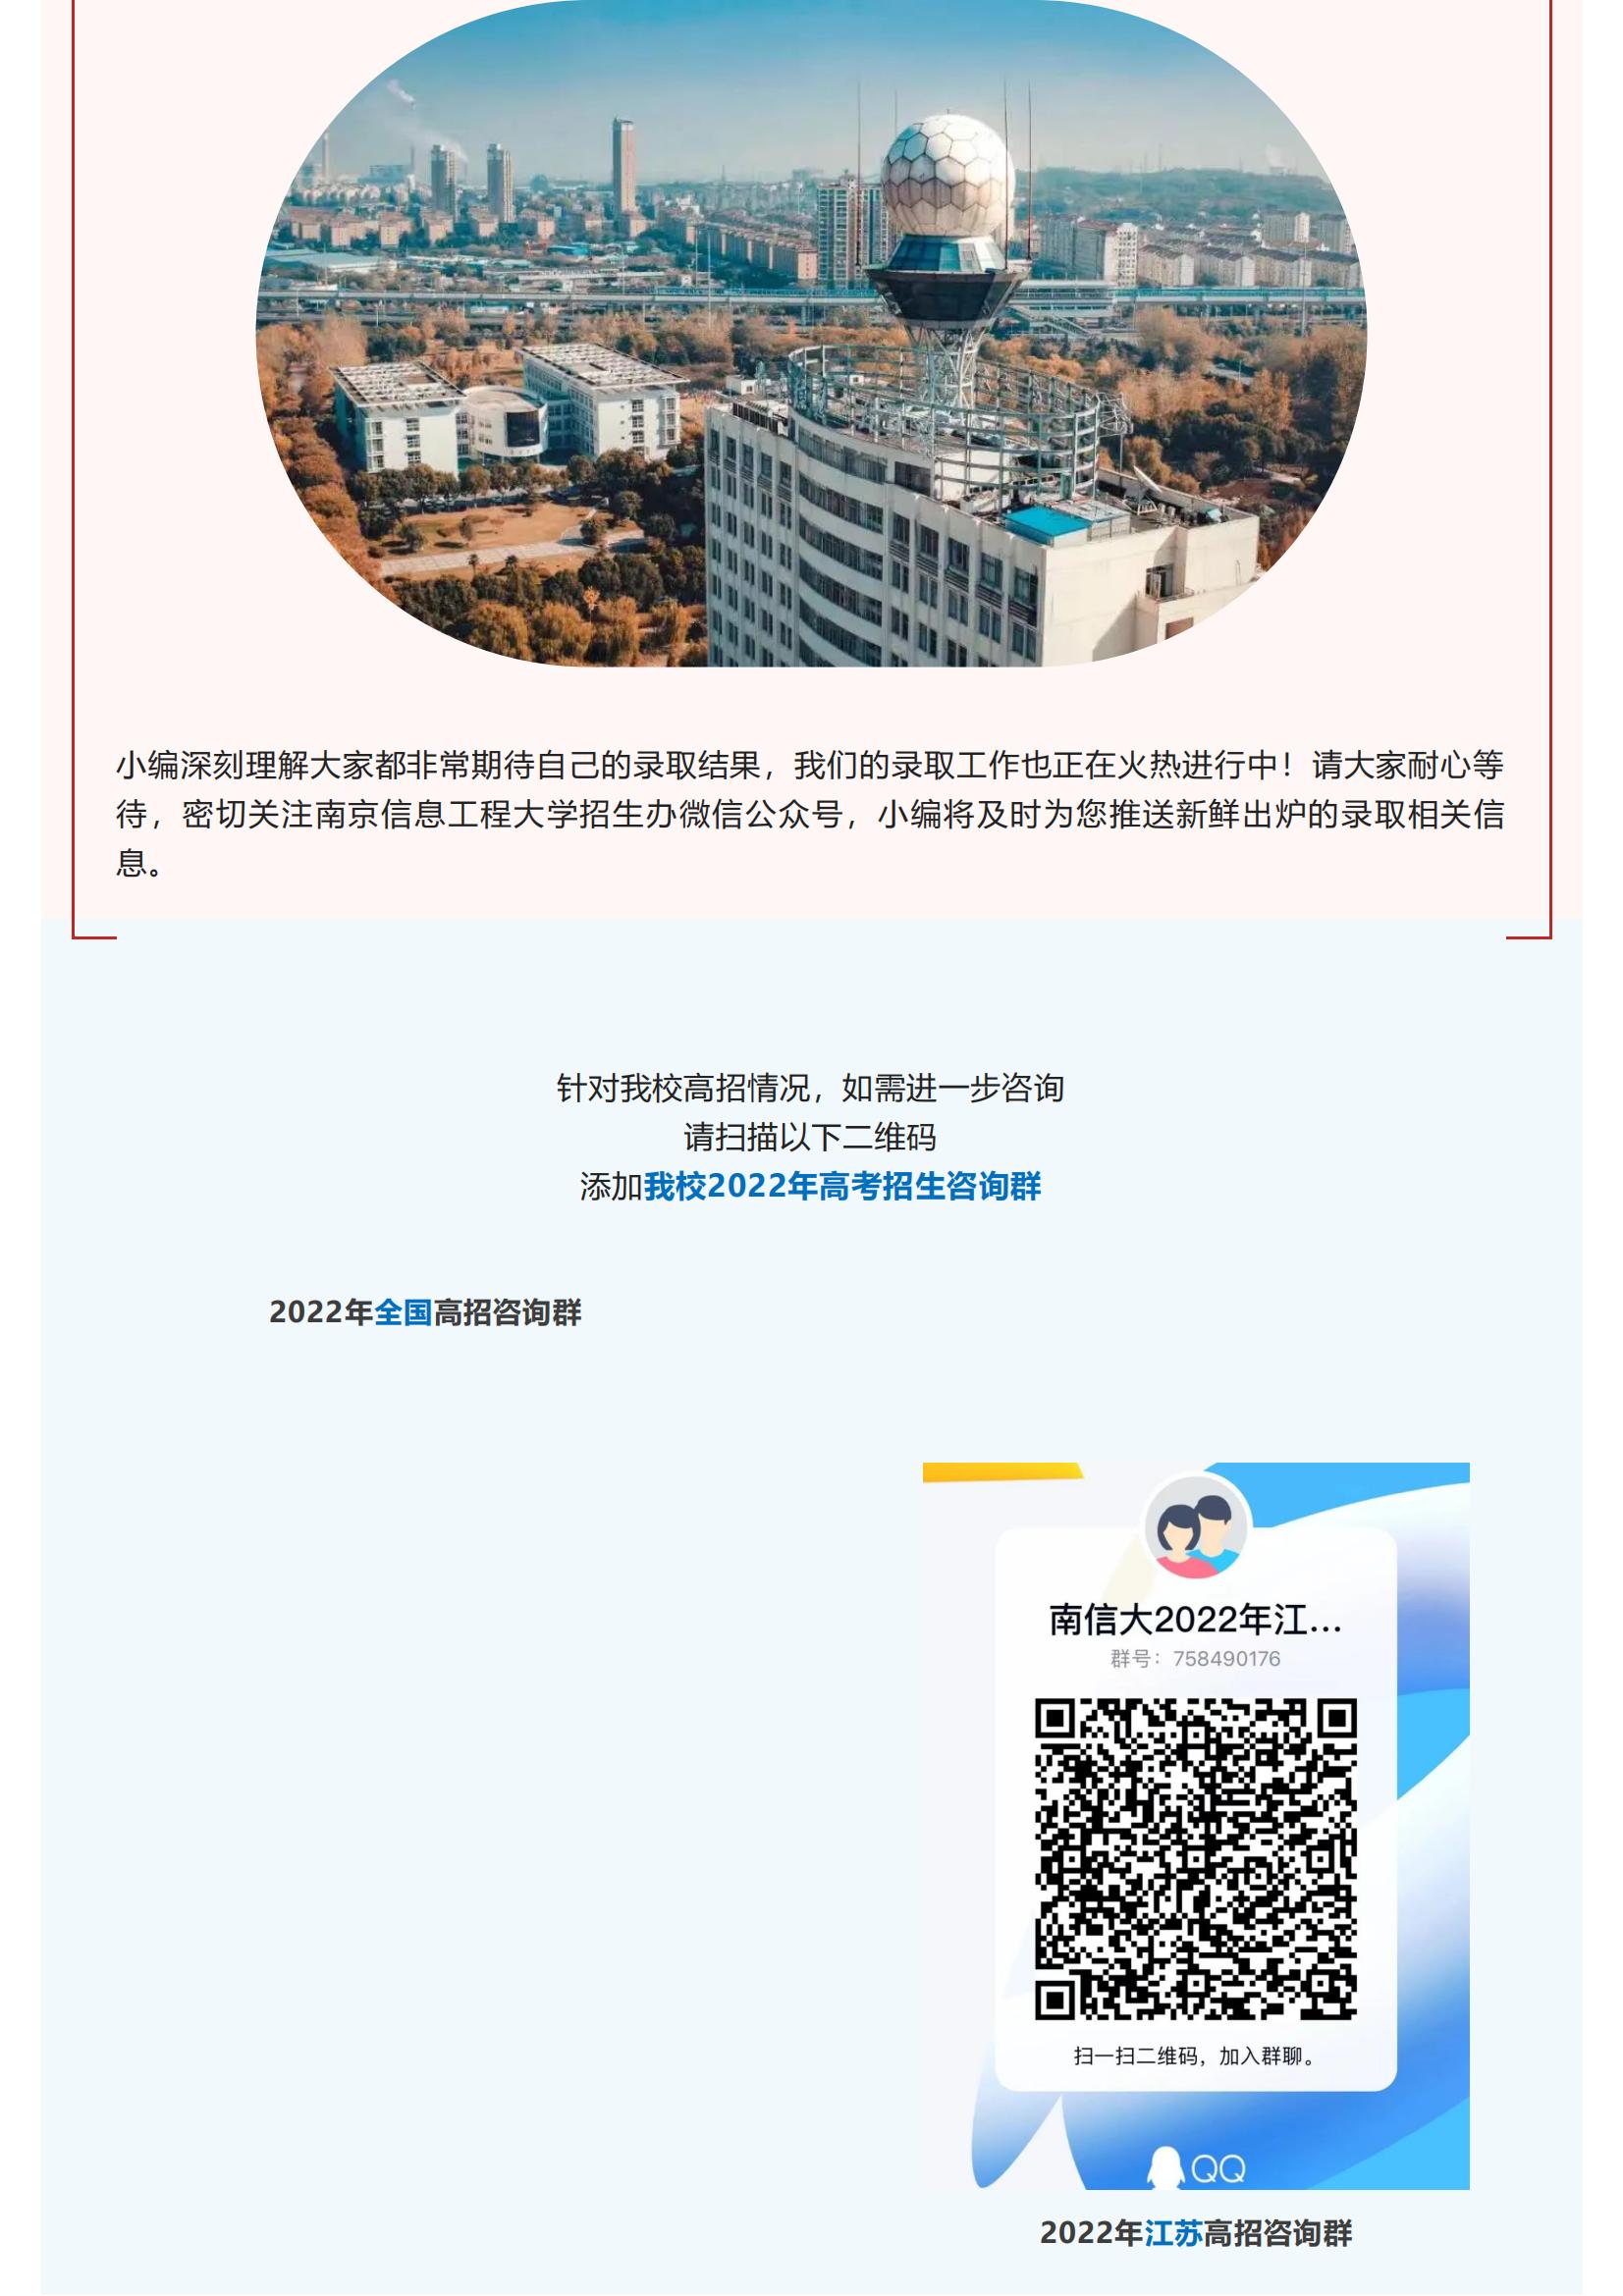 招生快讯 _ 南京信息工程大学2022年录取信息发布（7月10日更新）_11.jpg